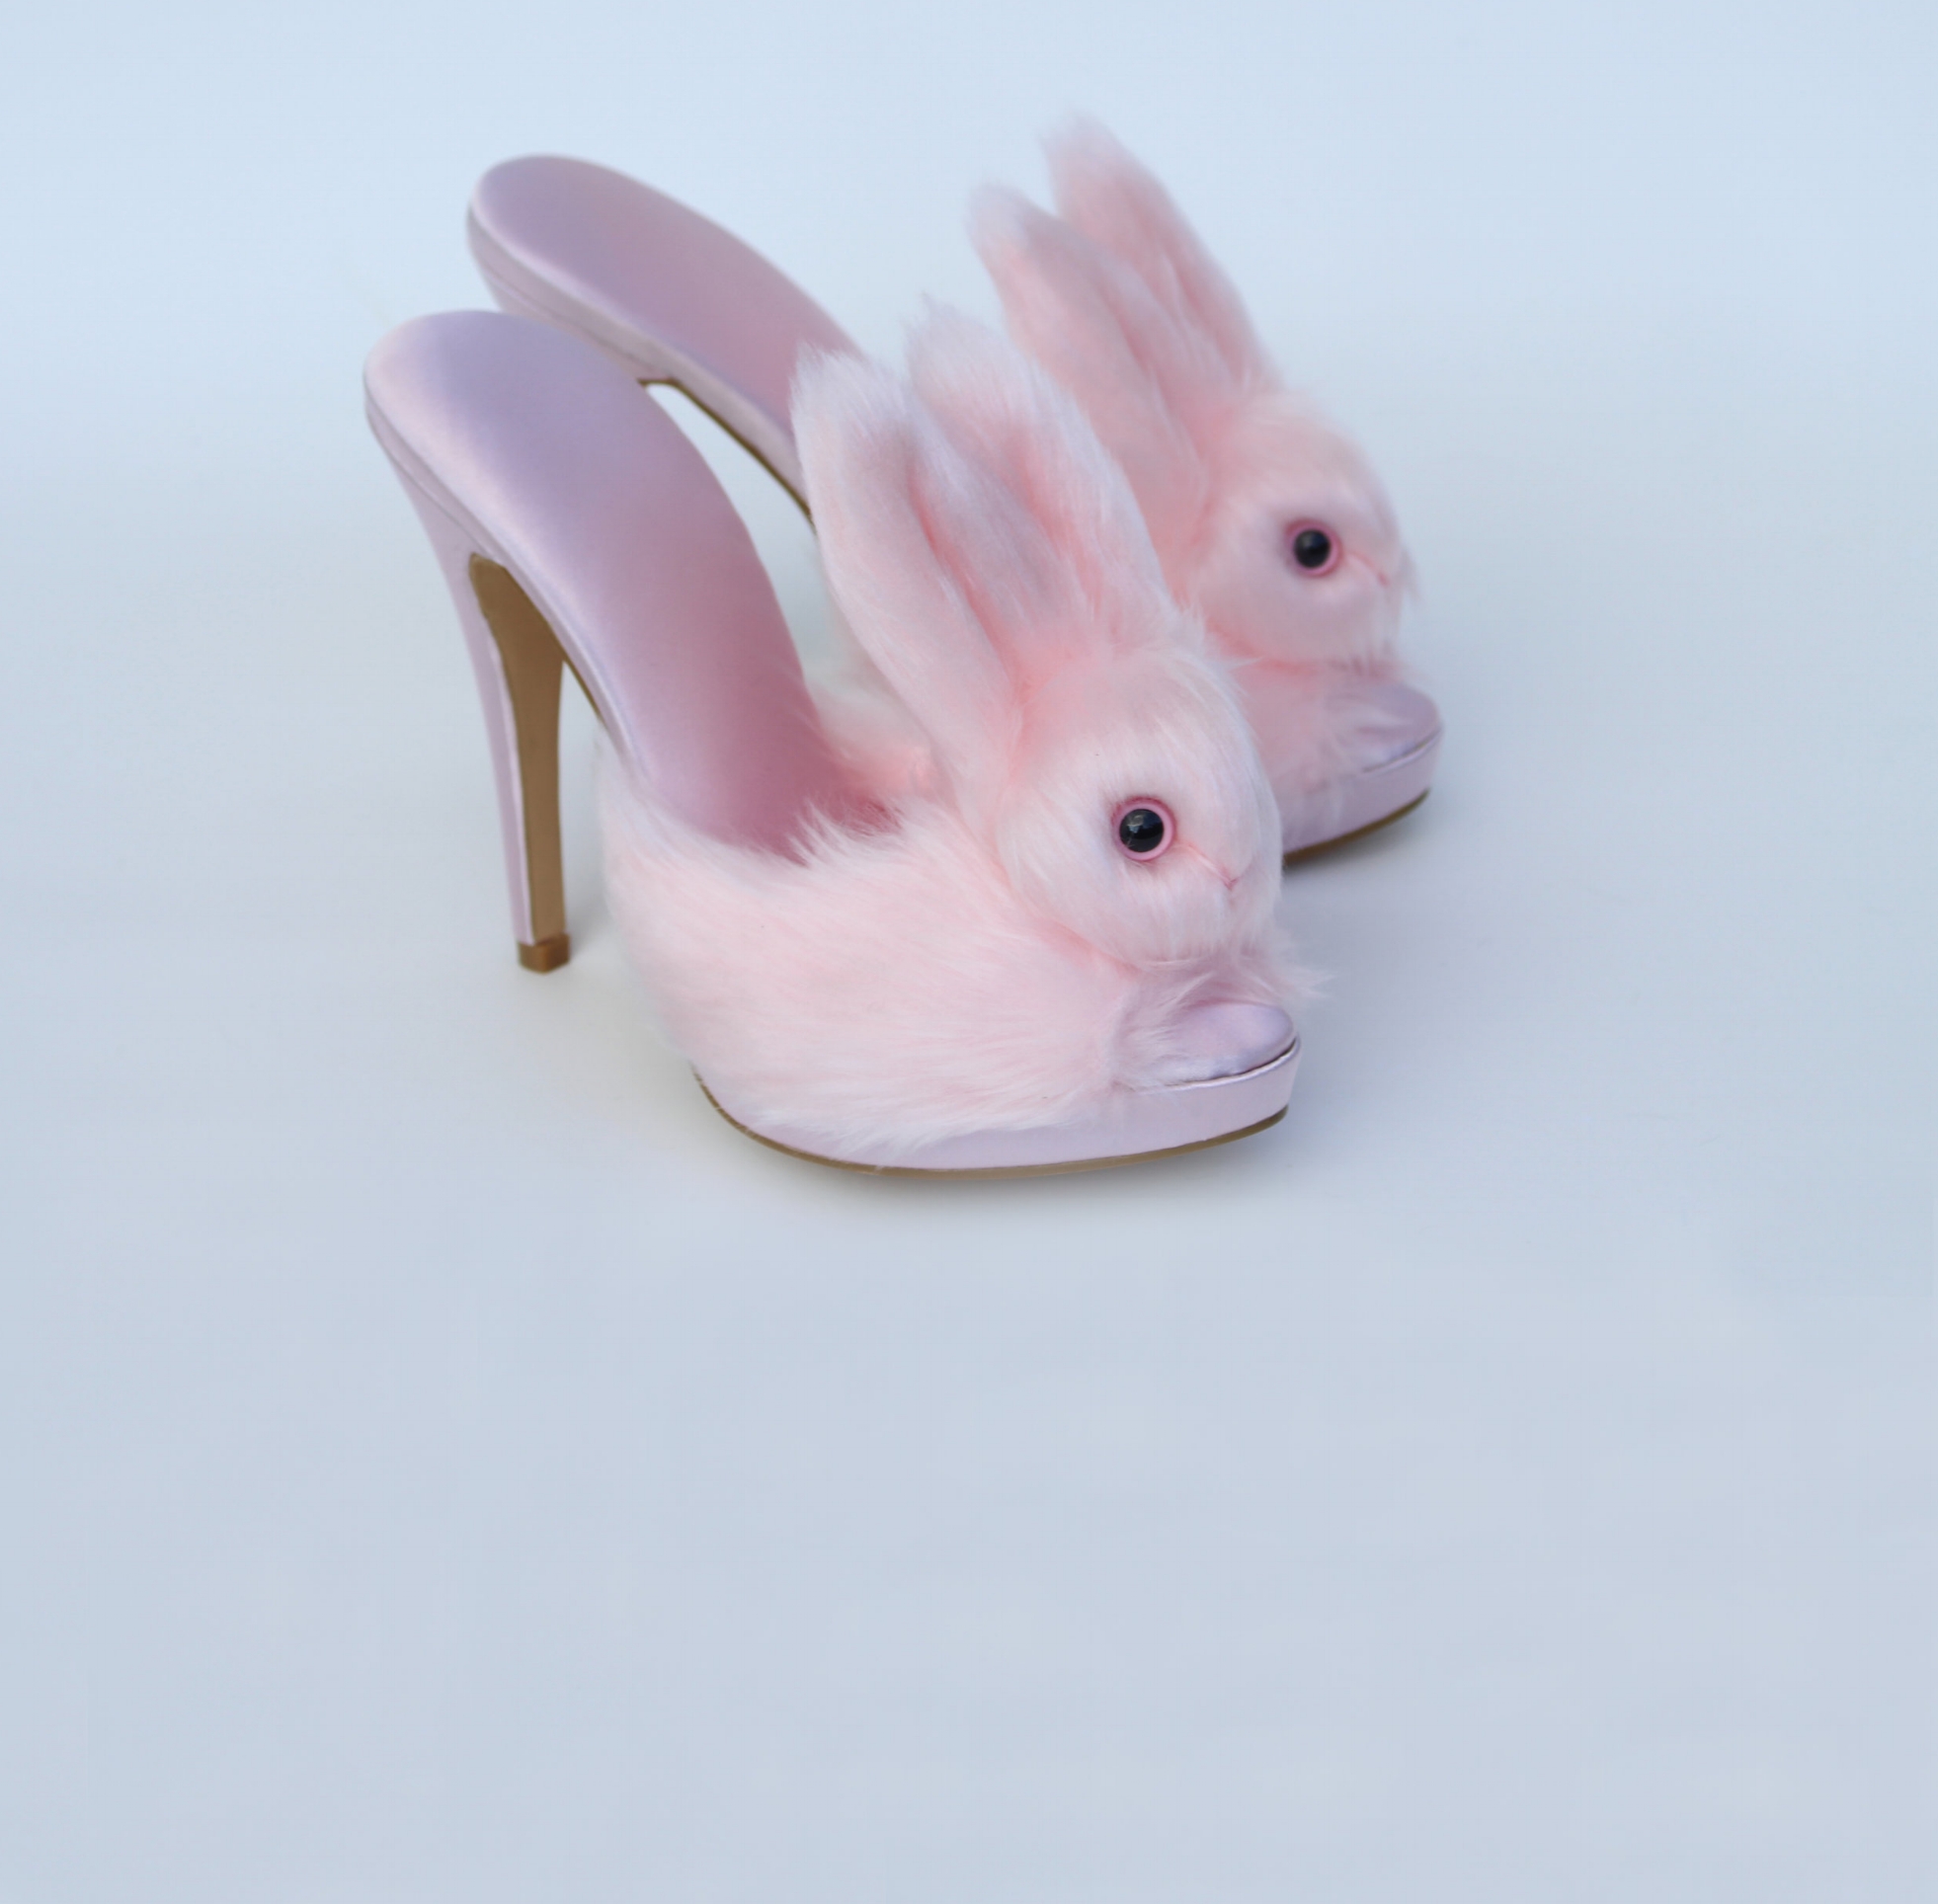 steel toe bunny slippers